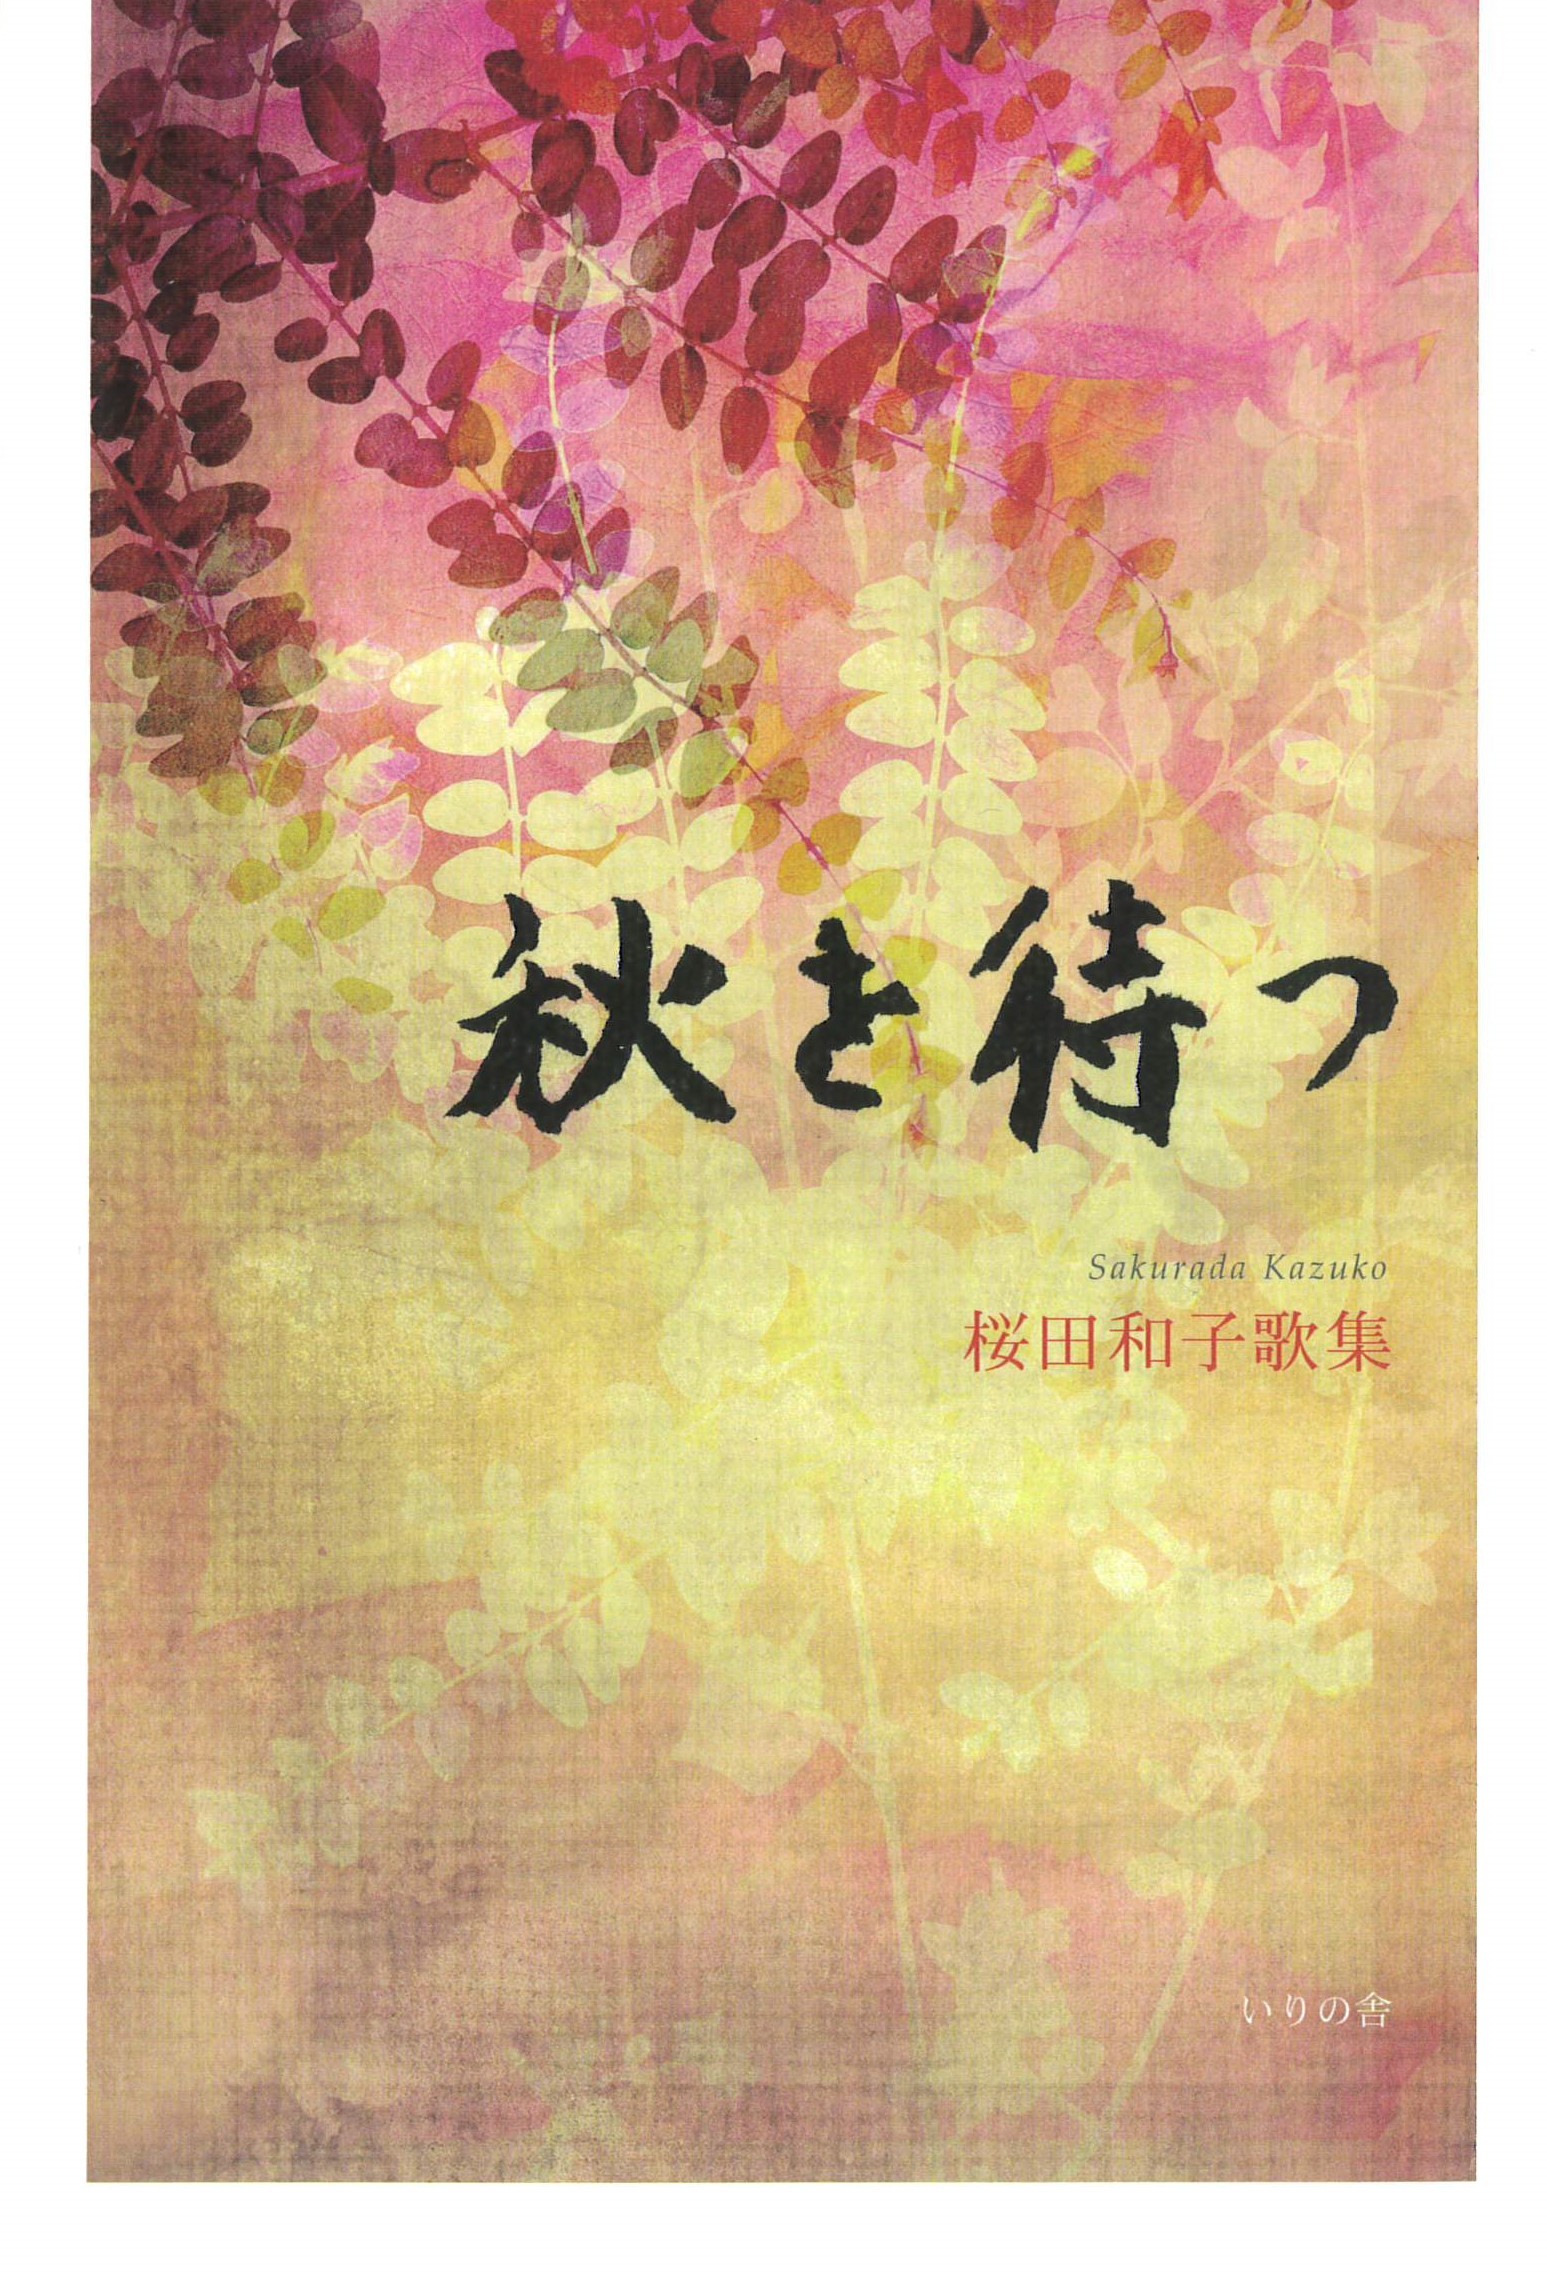 桜田和子歌集『秋を待つ』